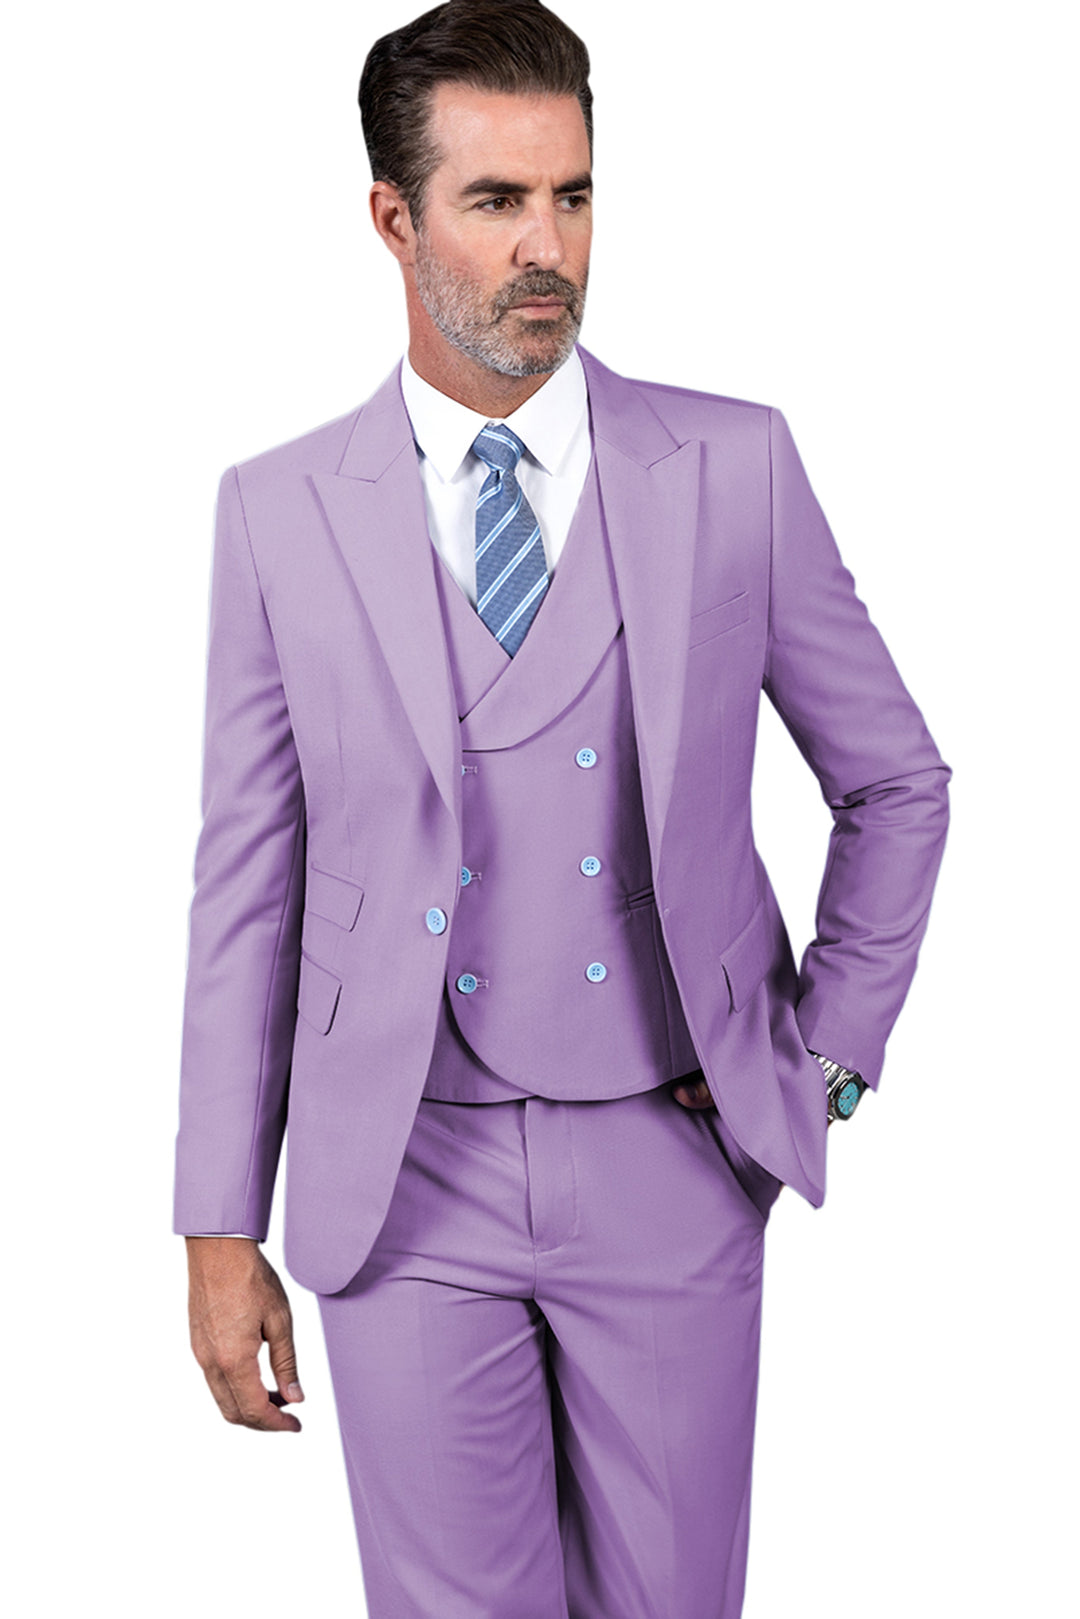 3 Piece Mens Suit Slim Fit Solid Peak lapel Suit (Blazer+Vest+Pants) mens event wear